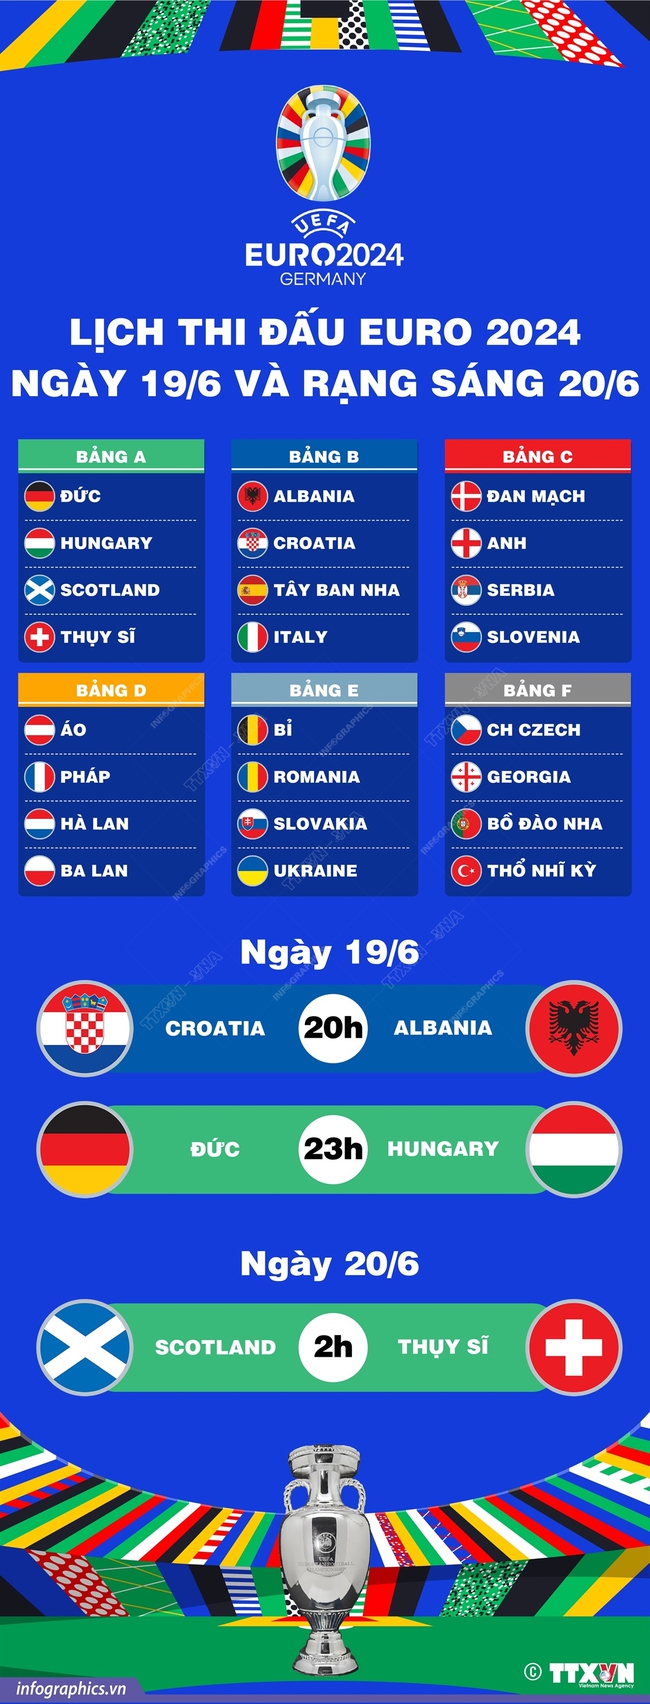 Lịch trực tiếp bóng đá EURO 2024 hôm nay ngày 19/6 - Ảnh 3.